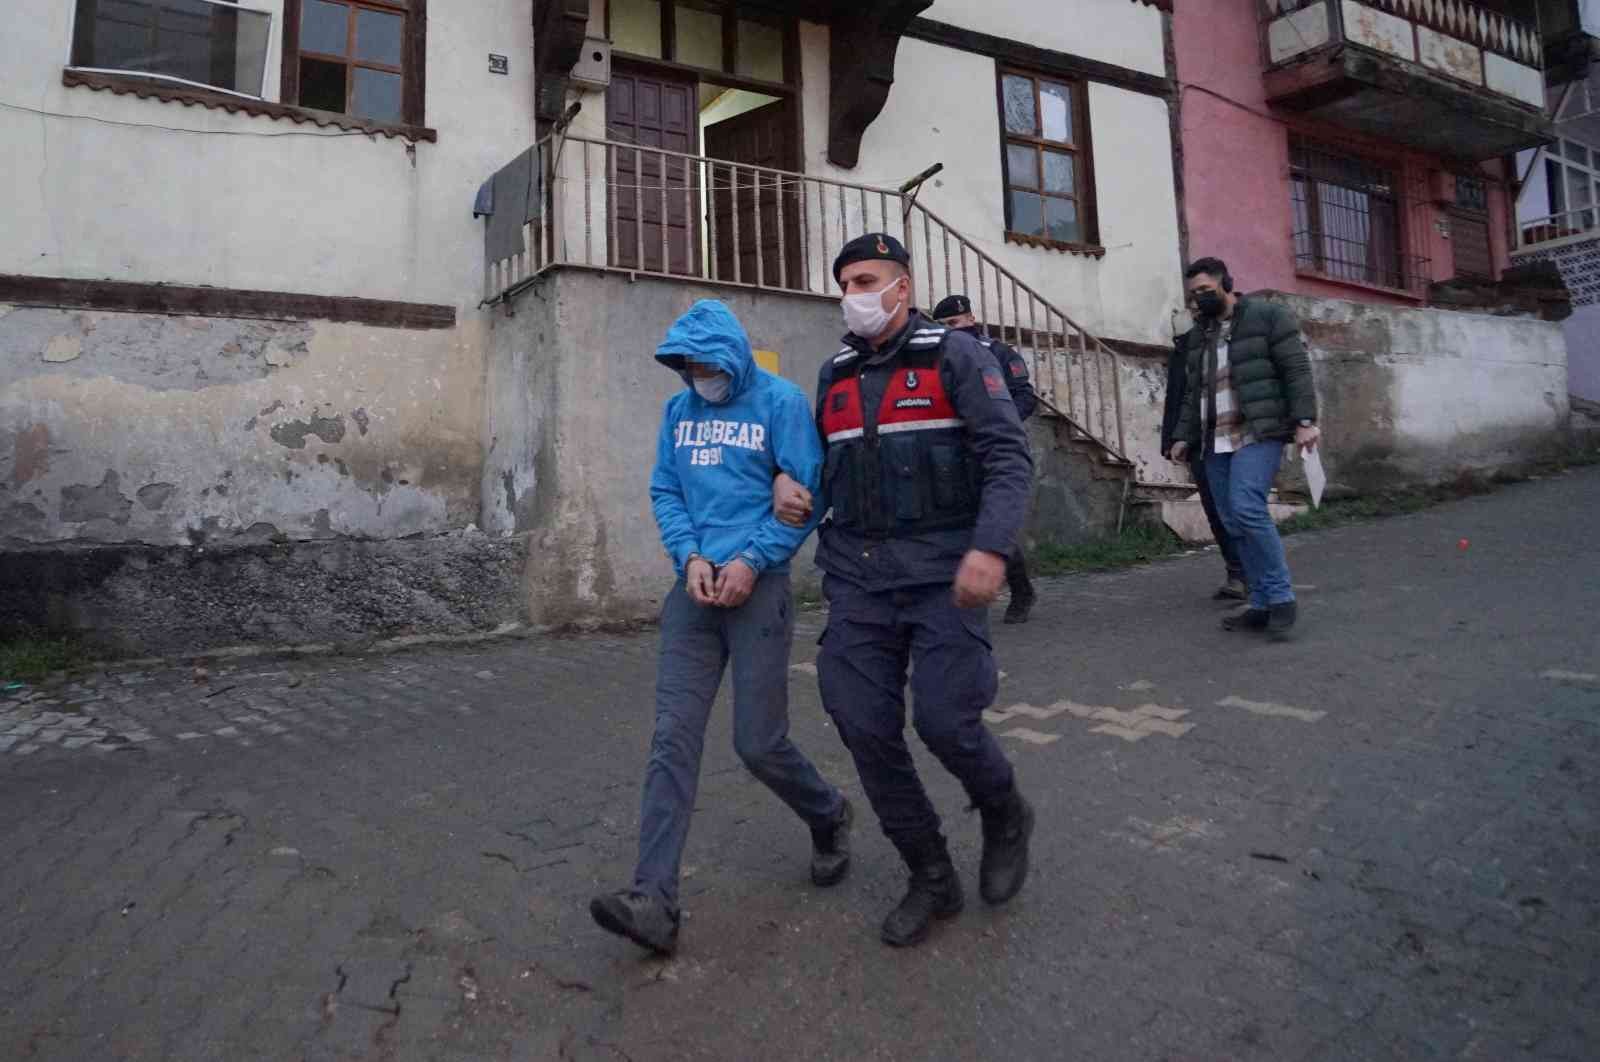 Kastamonu merkezli 4 ilde DEAŞ operasyonu: 20 gözaltı #kastamonu